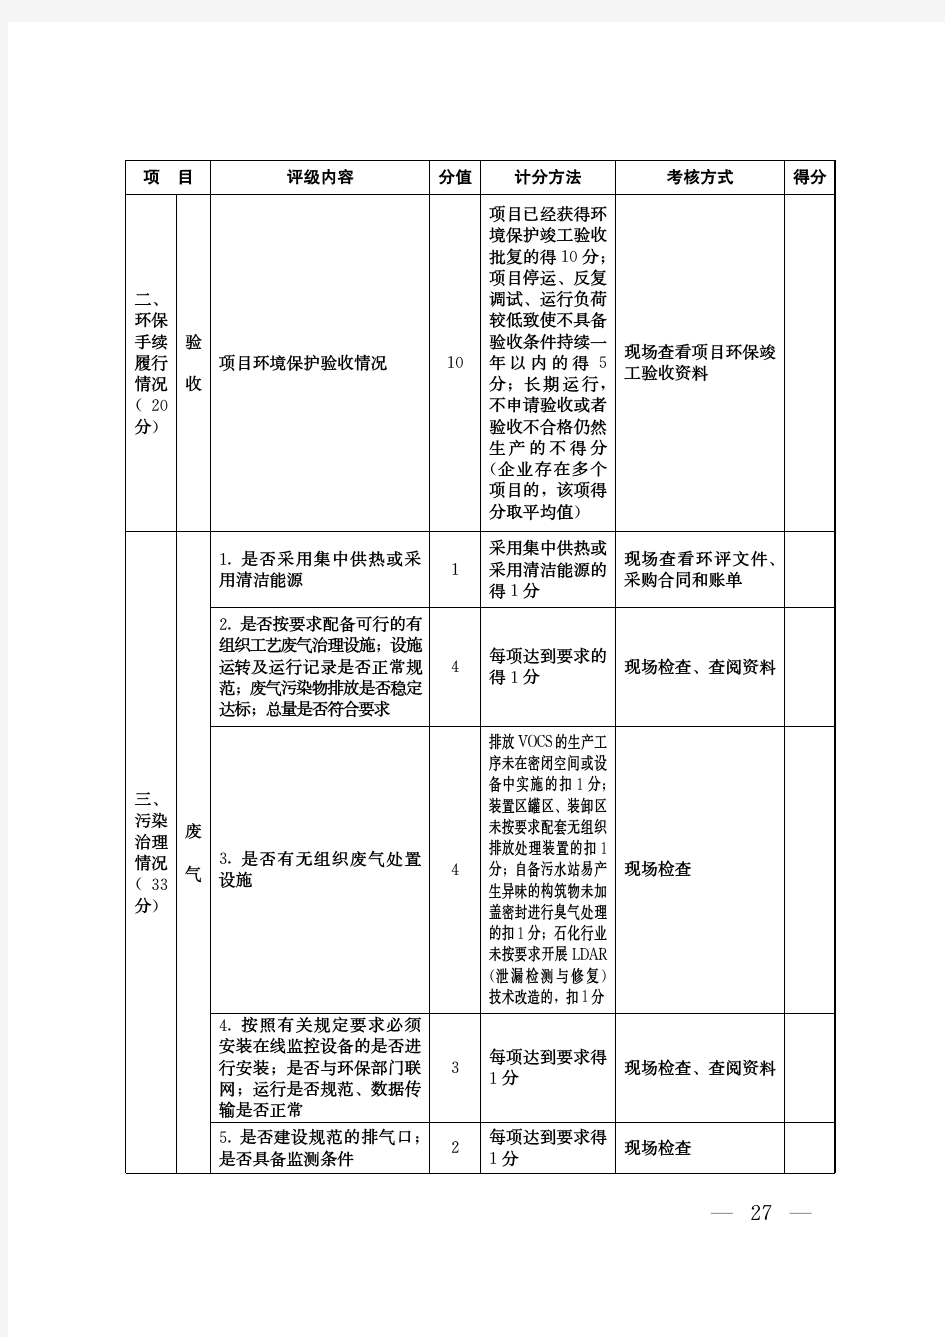 山东省化工企业环境保护评级标准(试行)